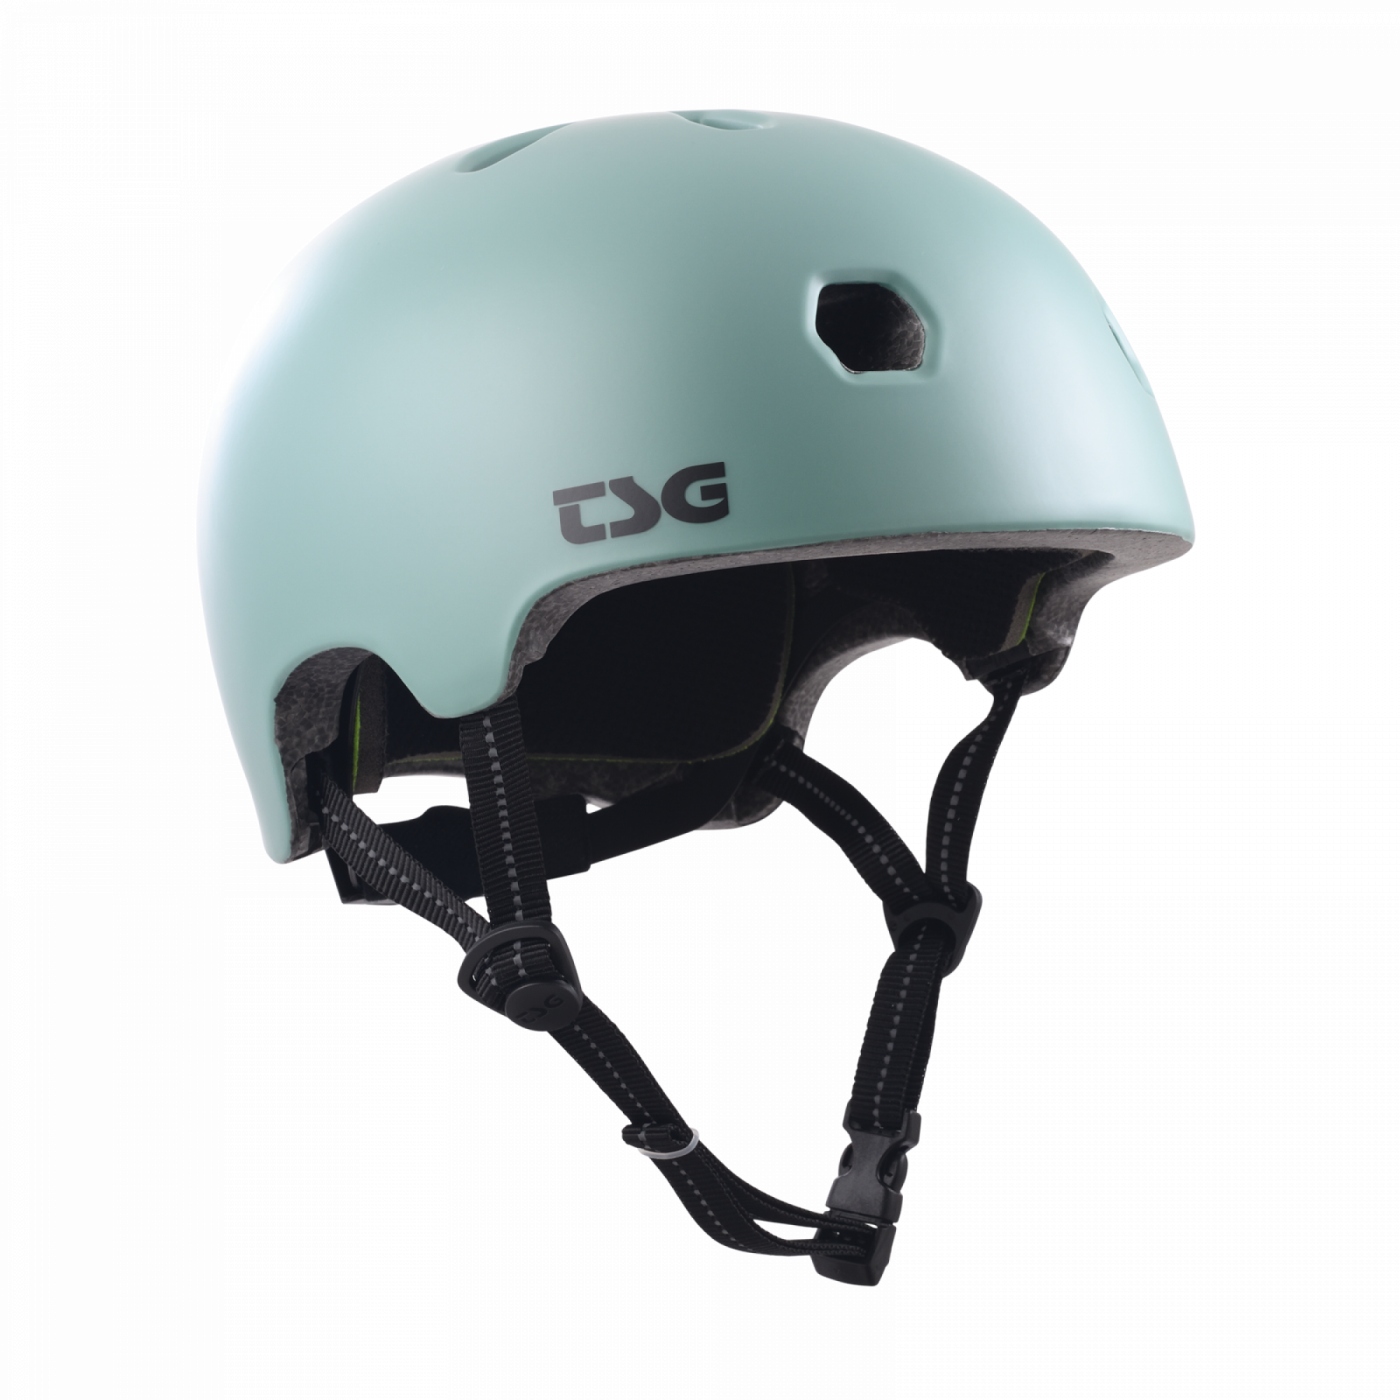 Produktbild von TSG Meta Solid Color Helm - satin oil blue